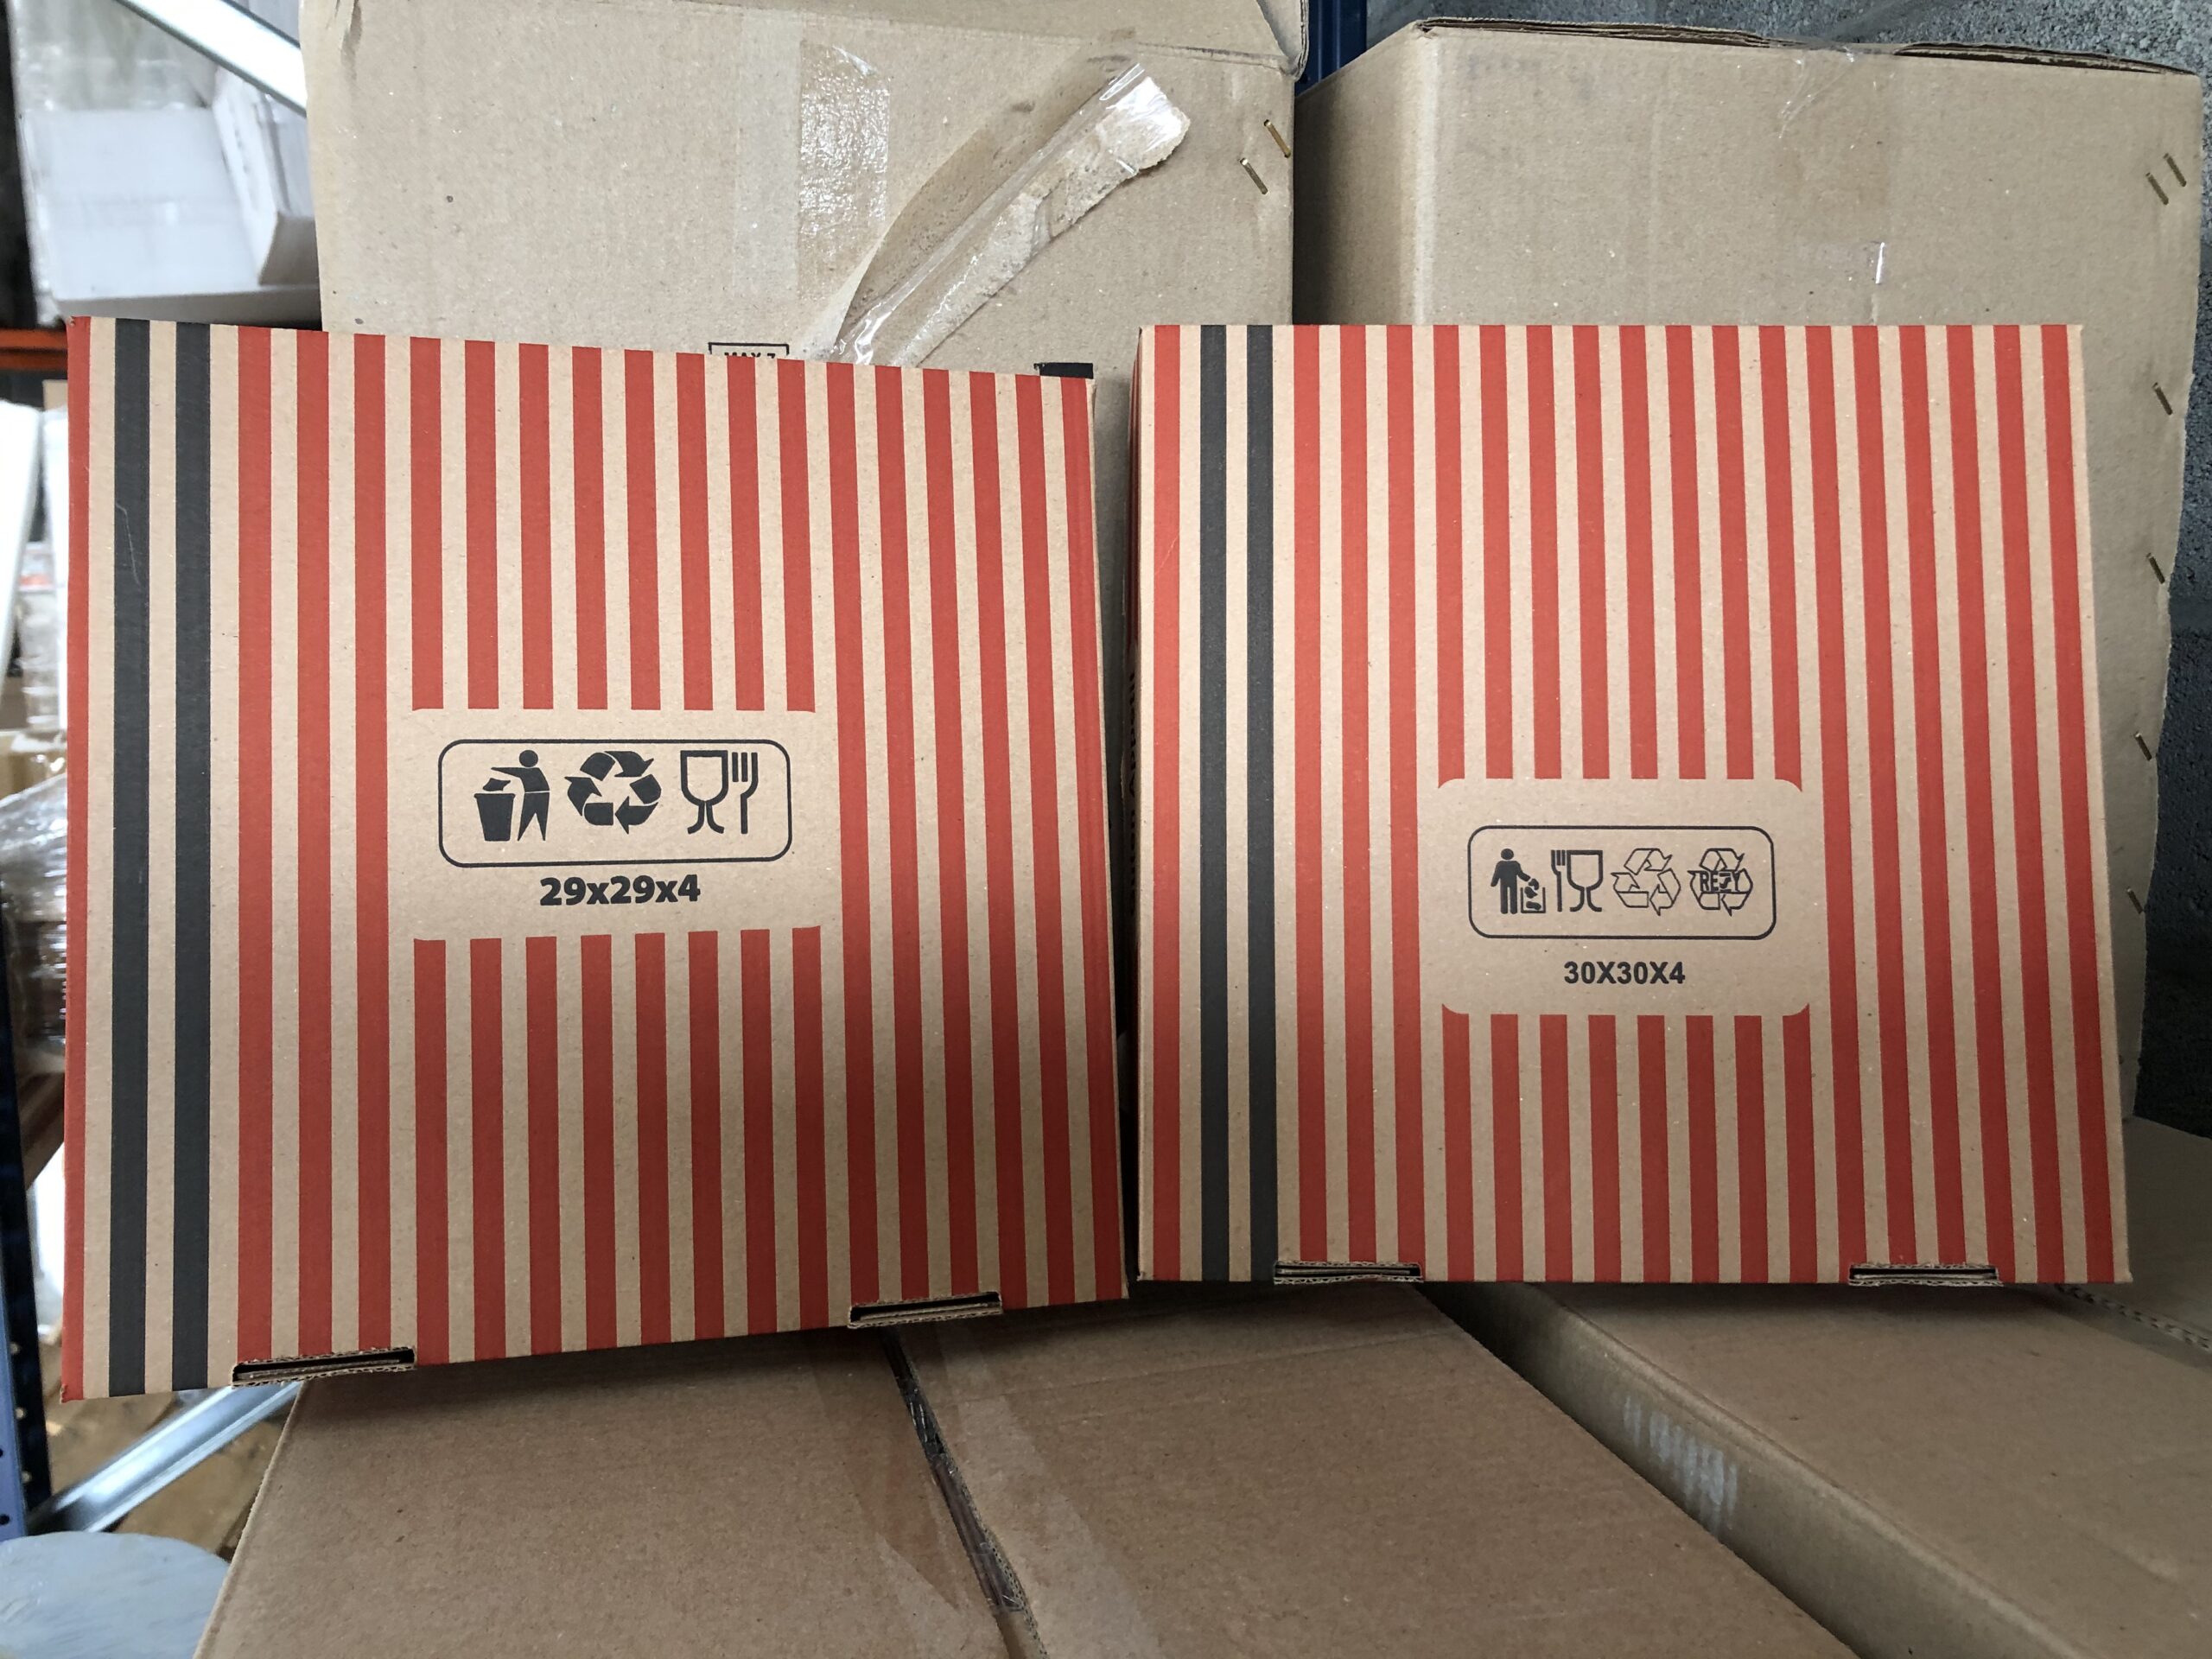 Boîte pizza, carton ondulé, 30x16x10cm, calzone, blanc (415008), Neutraal